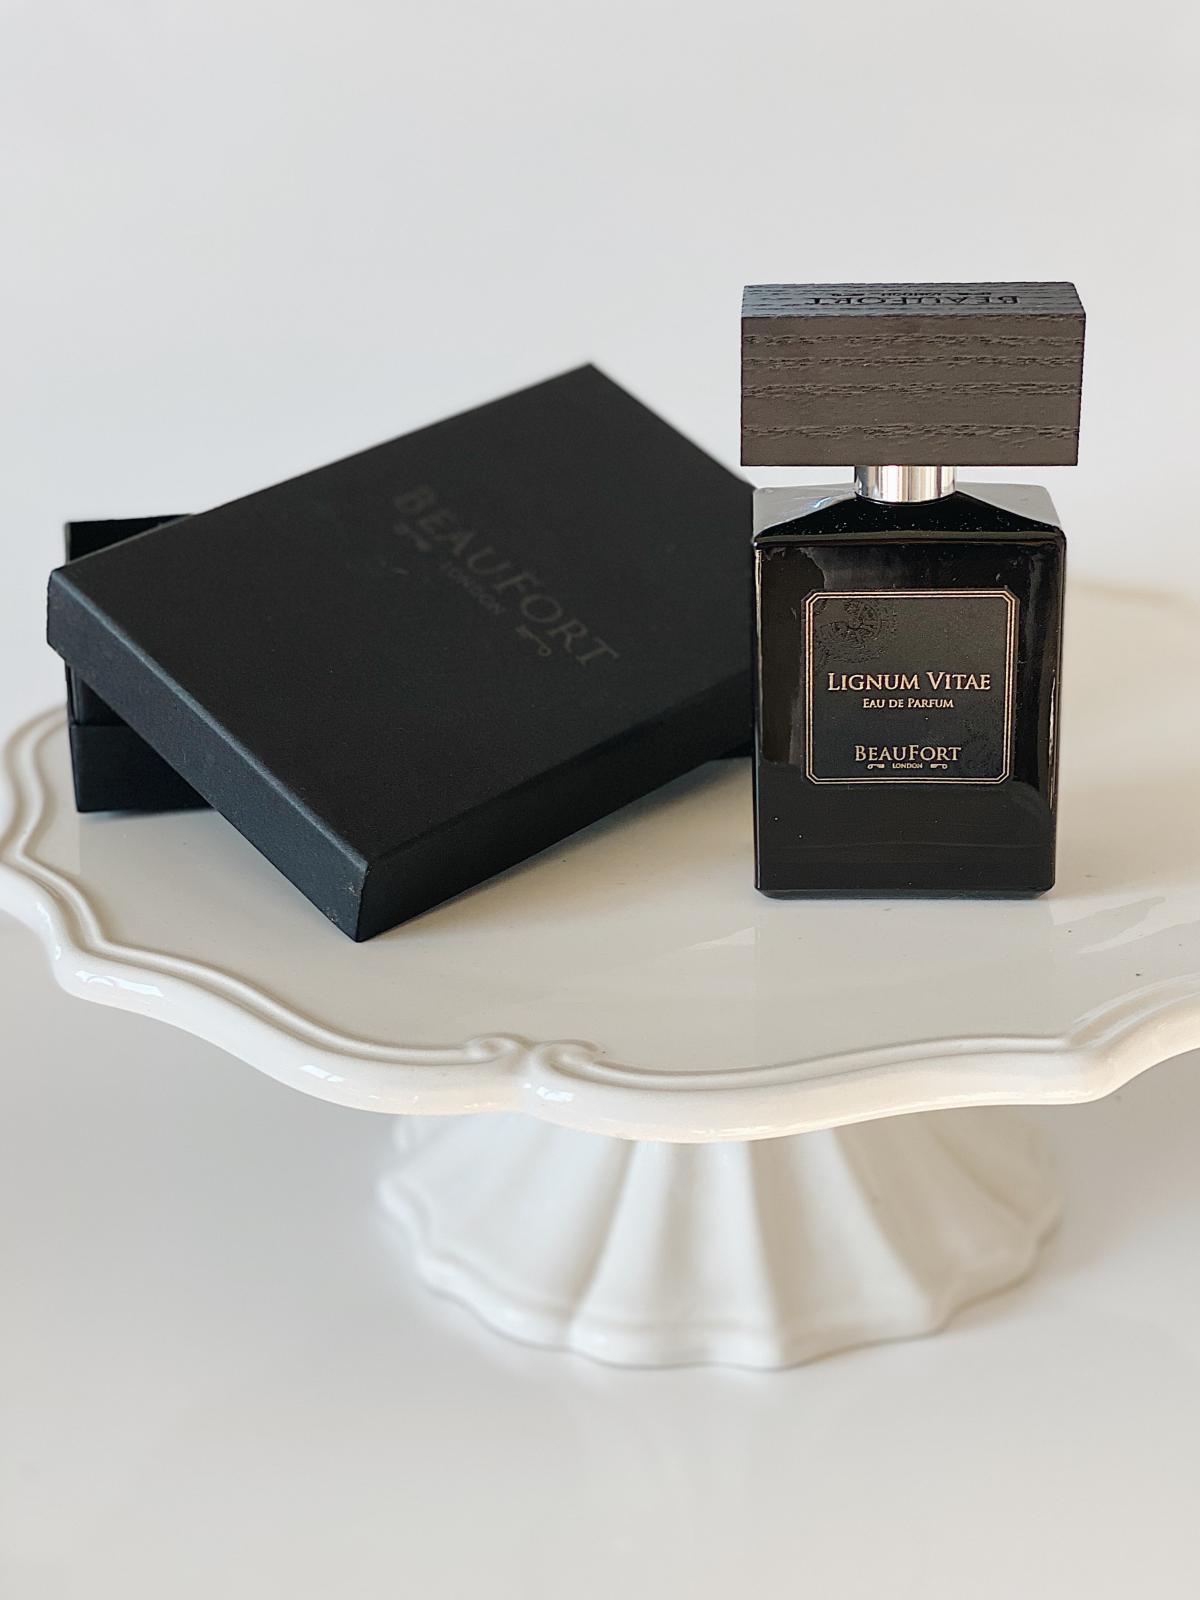 Lignum Vitae BeauFort London perfume - a fragrance for women and men 2016